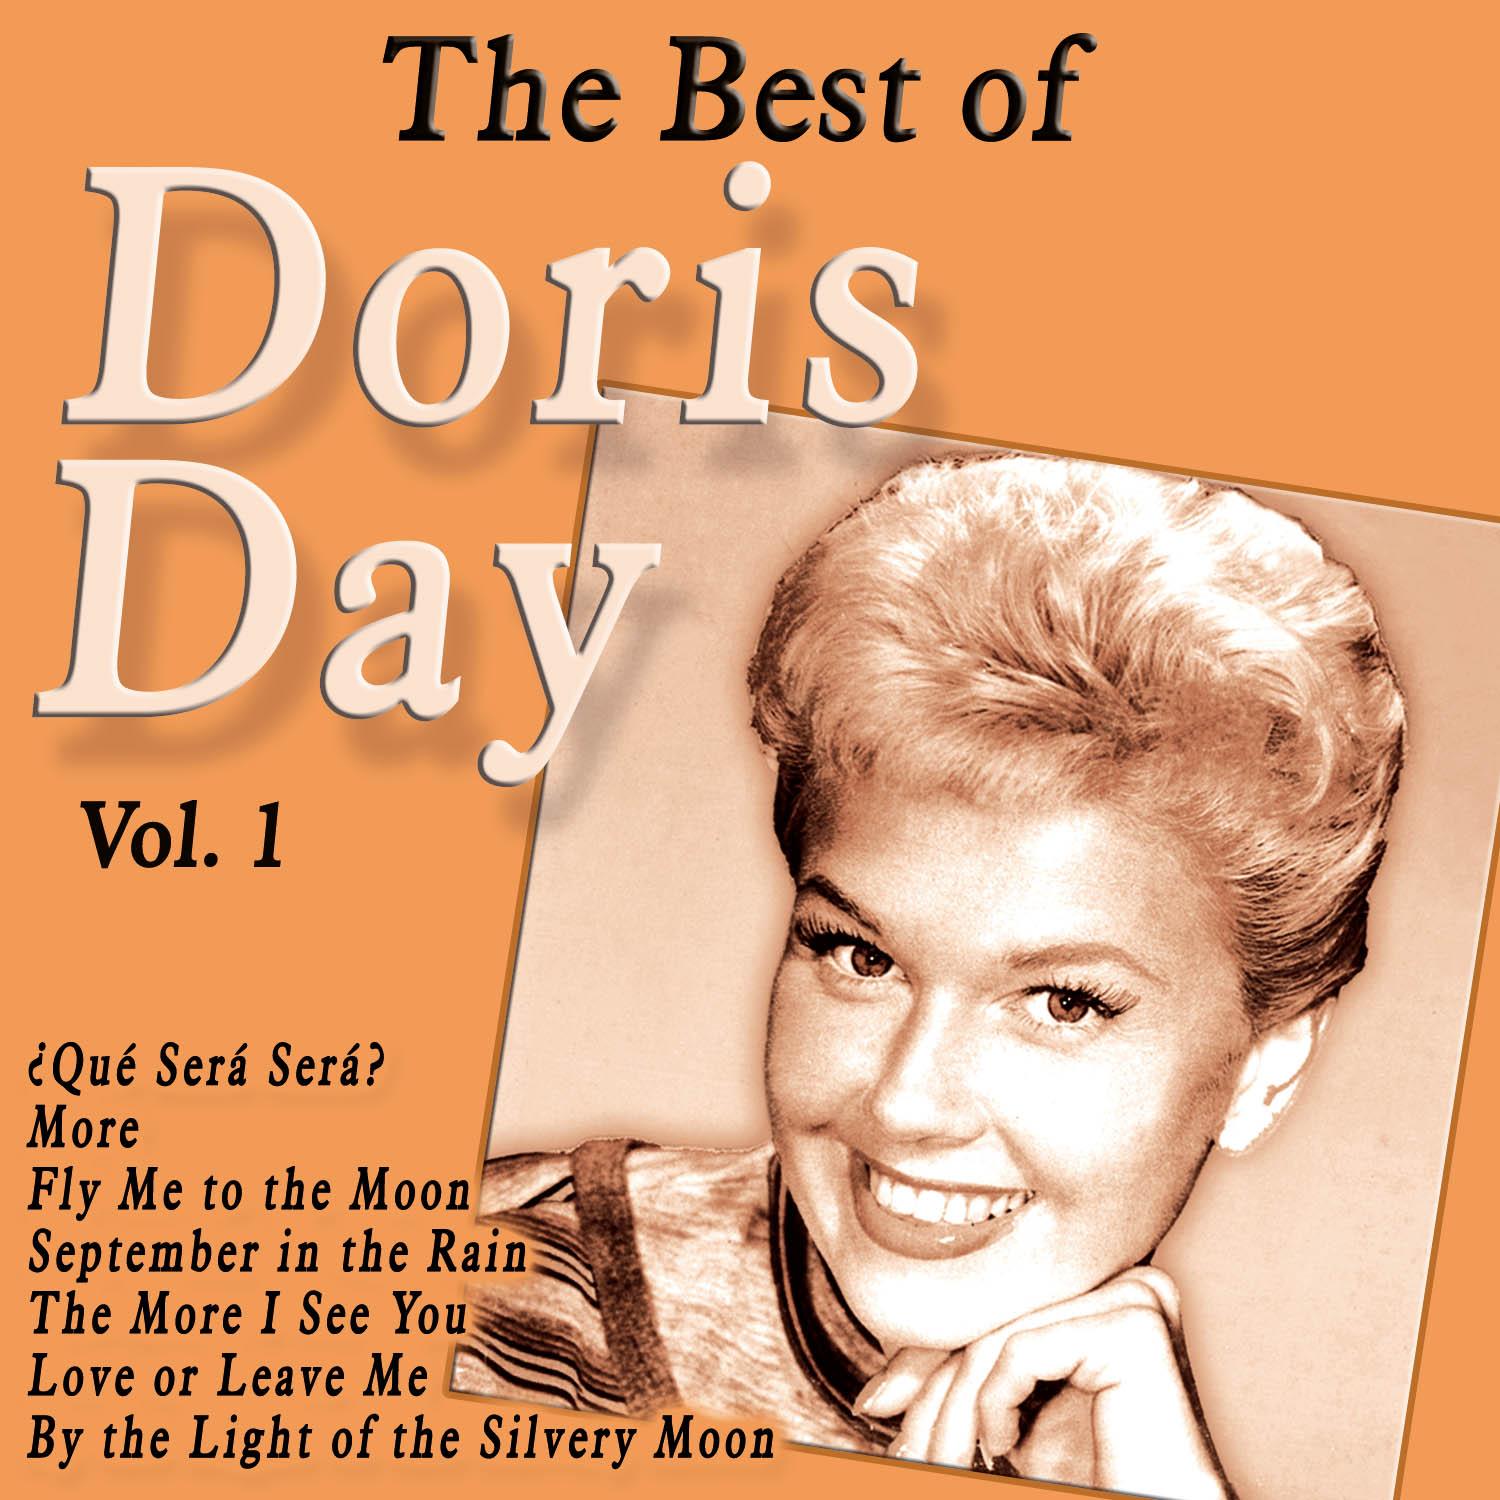 The Best of Doris Day Vol. 1